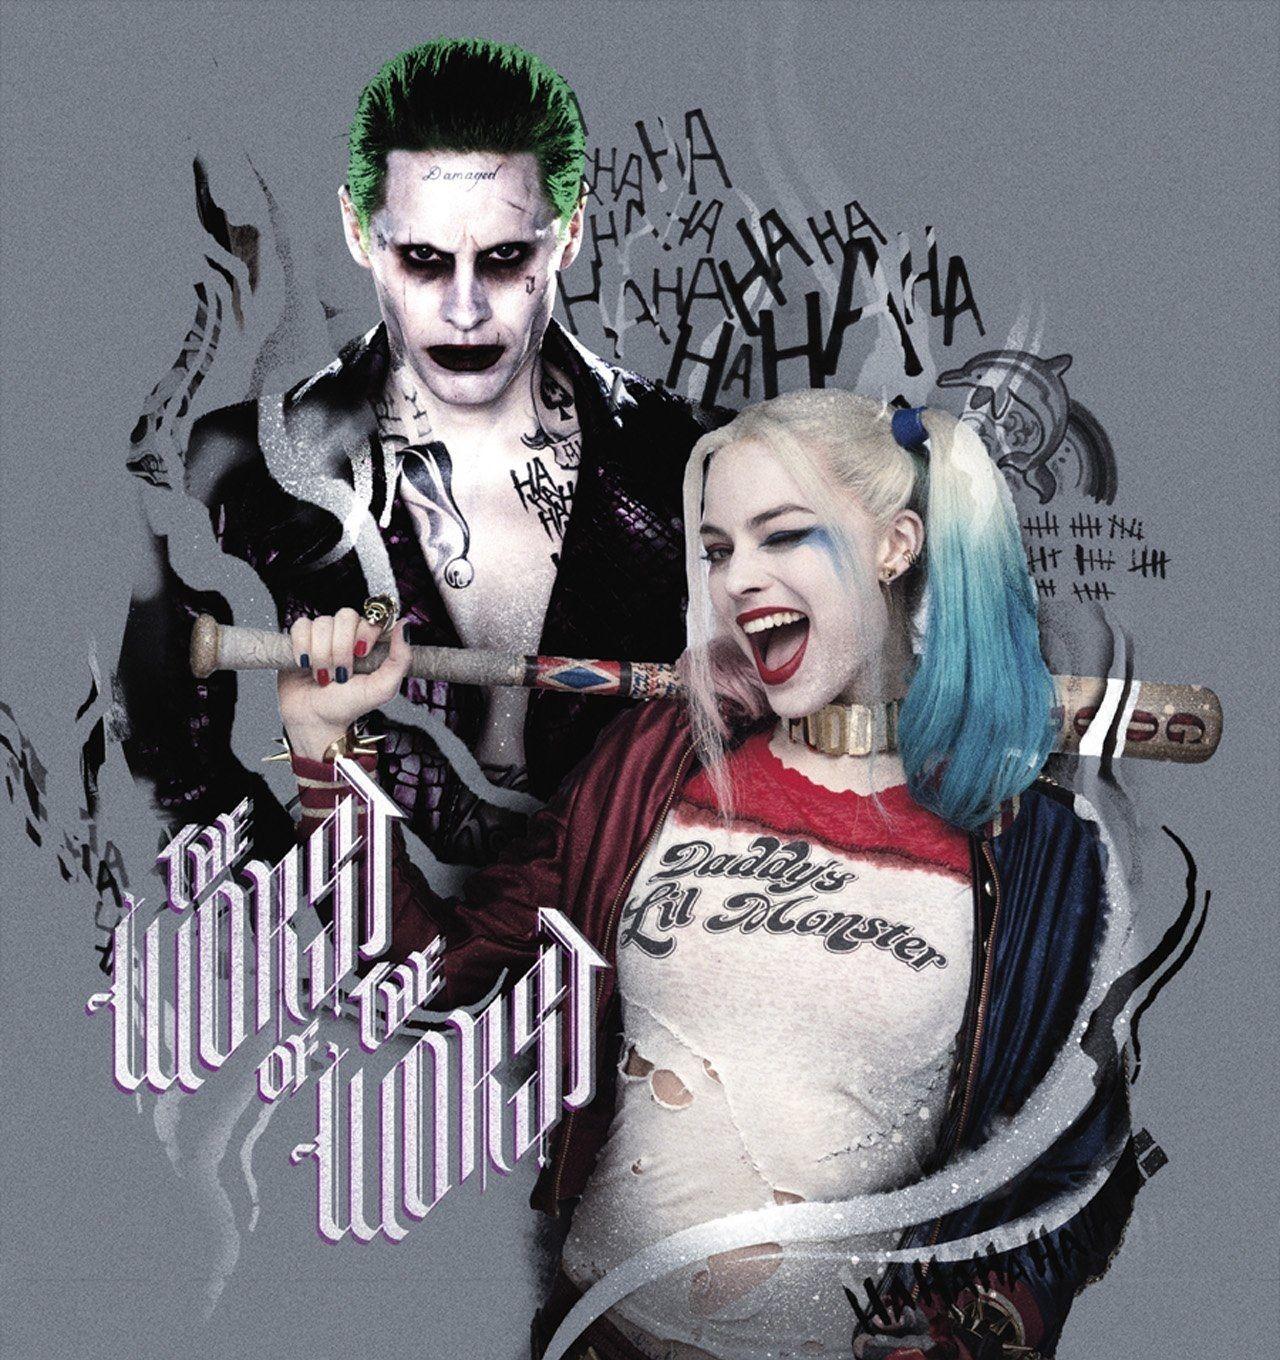 40 Gambar Joker and Harley Quinn Hd Wallpapers for Mobile terbaru 2020